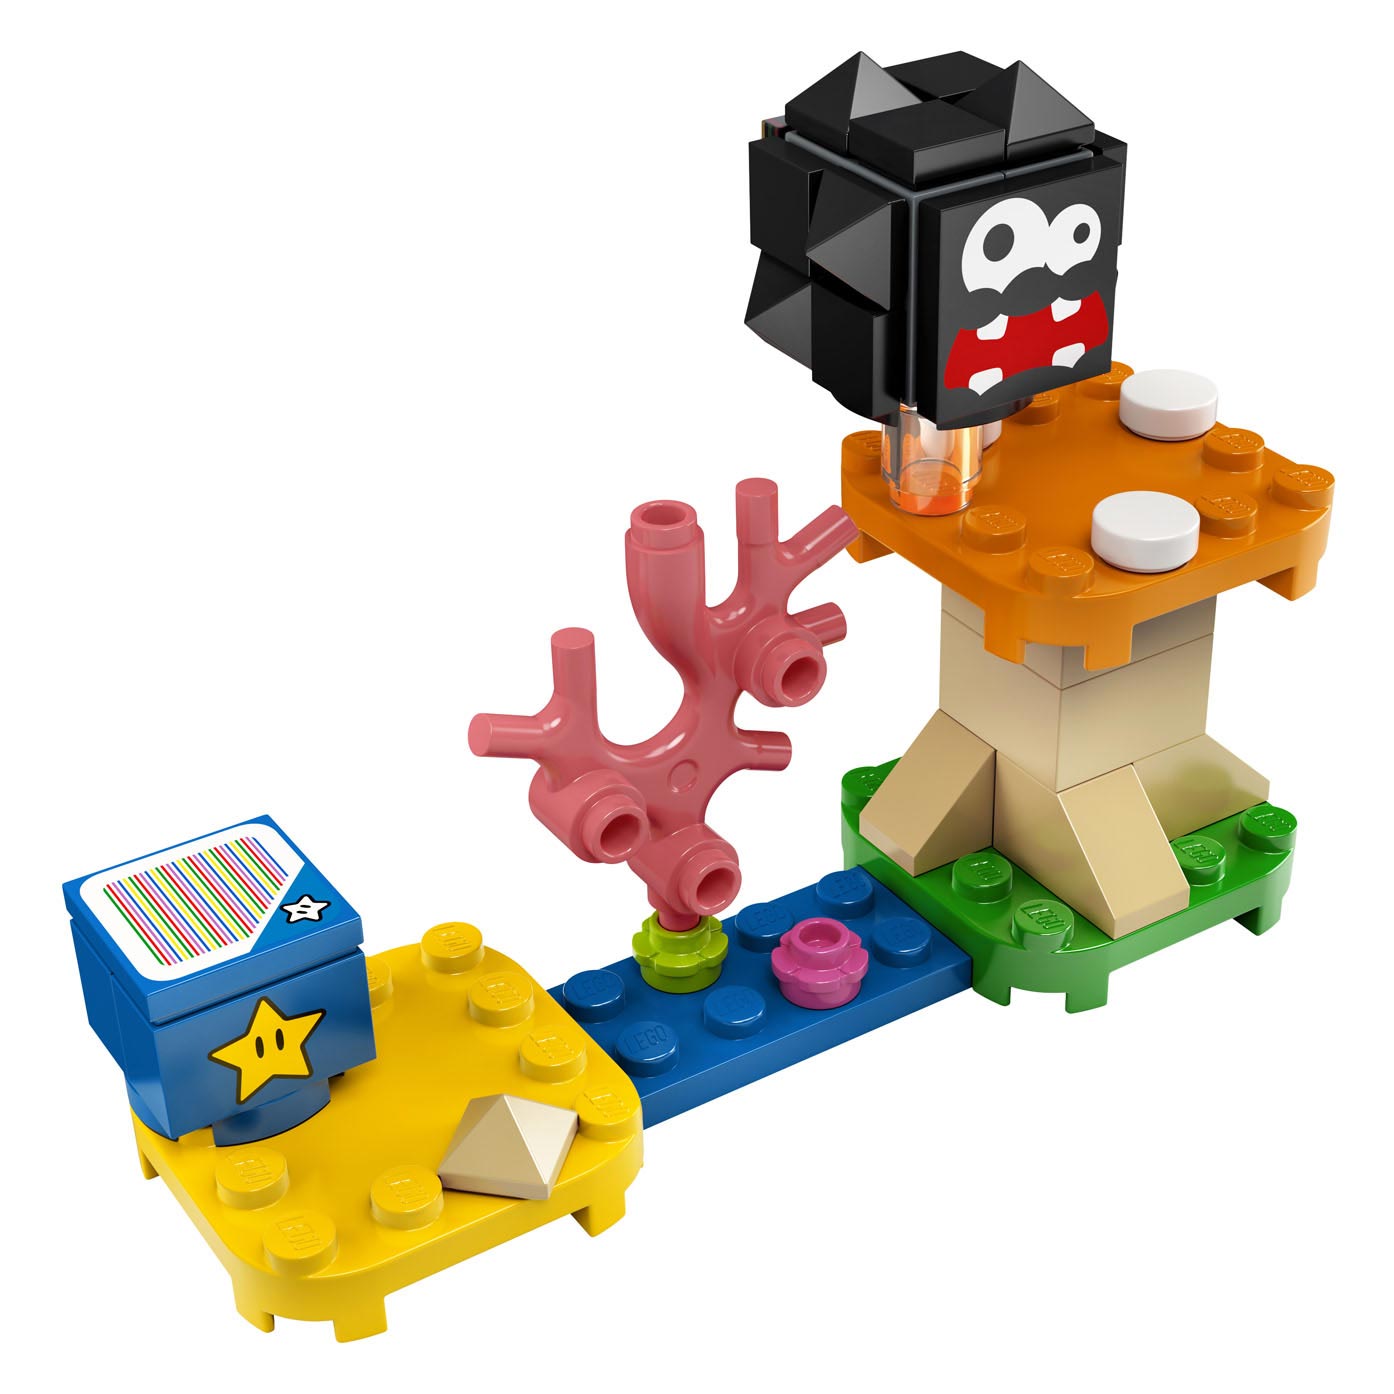 LEGO Super Mario 30389 Uitbreidingsset Paddenstoelplatform